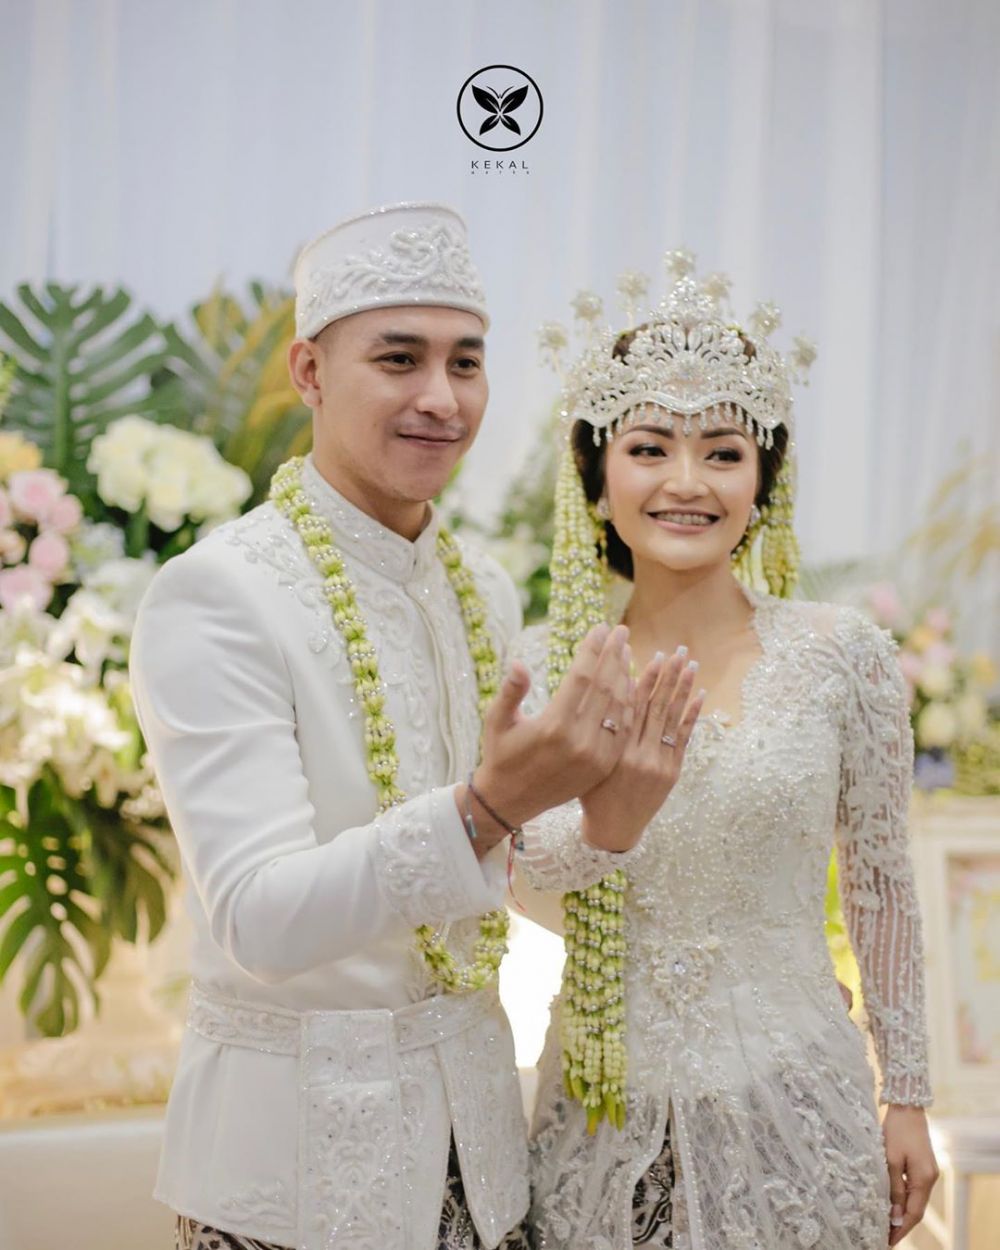 Perjalanan cinta Siti Badriah dan Krisjiana hingga ke pelaminan 